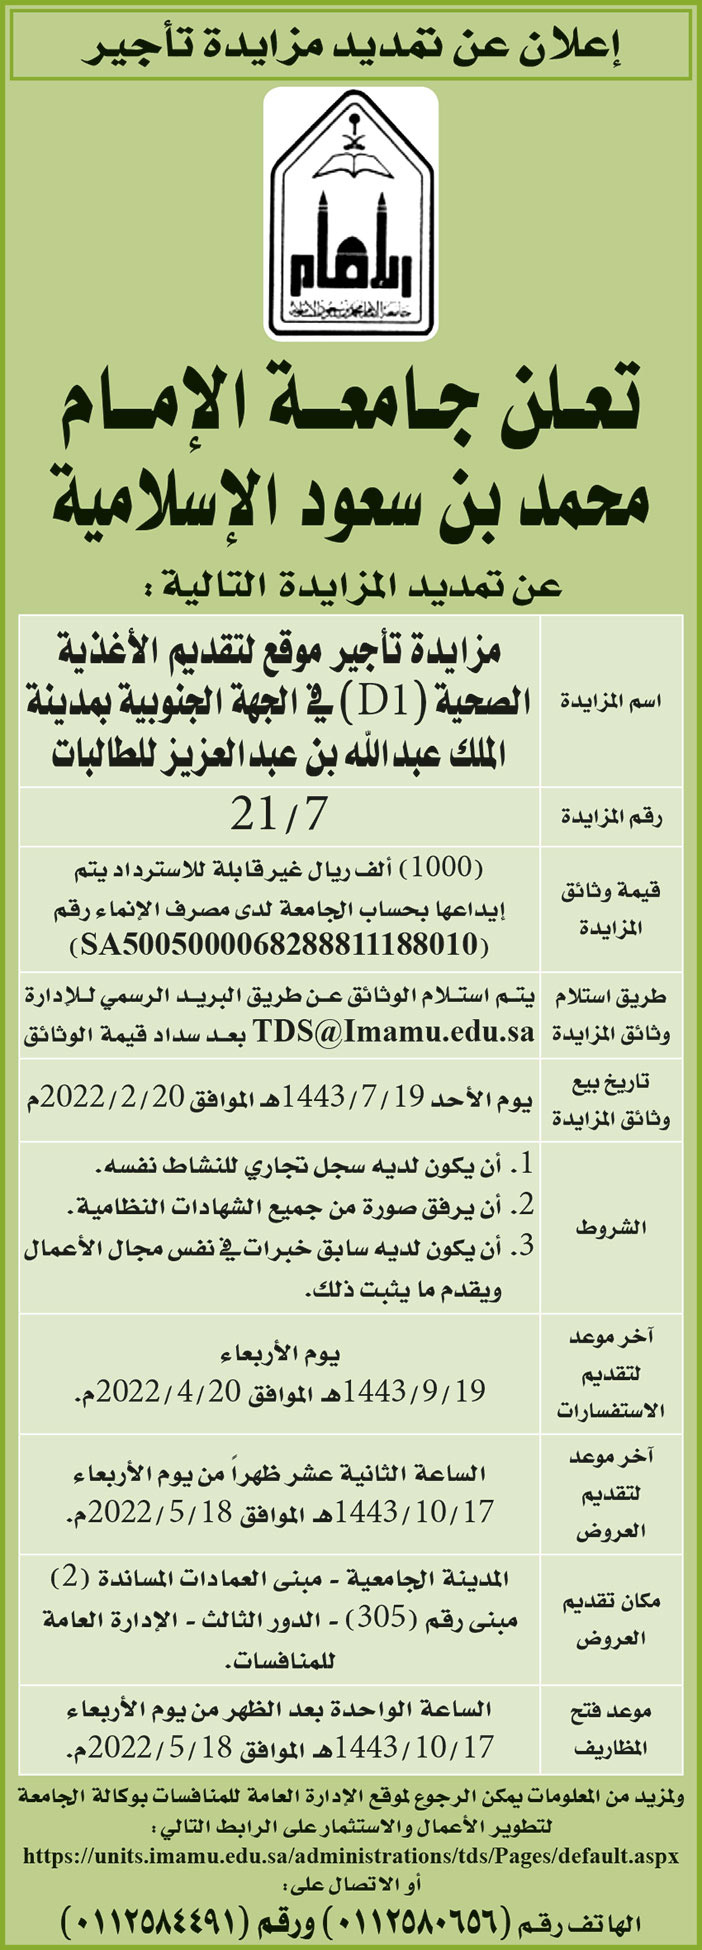 جامعة الإمام محمد بن سعود الإسلامية تمدد مزايدة تأجير موقع لتقديم الأغذية الصحية (D1) في الجهة الجنوبية بمدينة الملك عبدالله بن عبدالعزيز للطالبات 